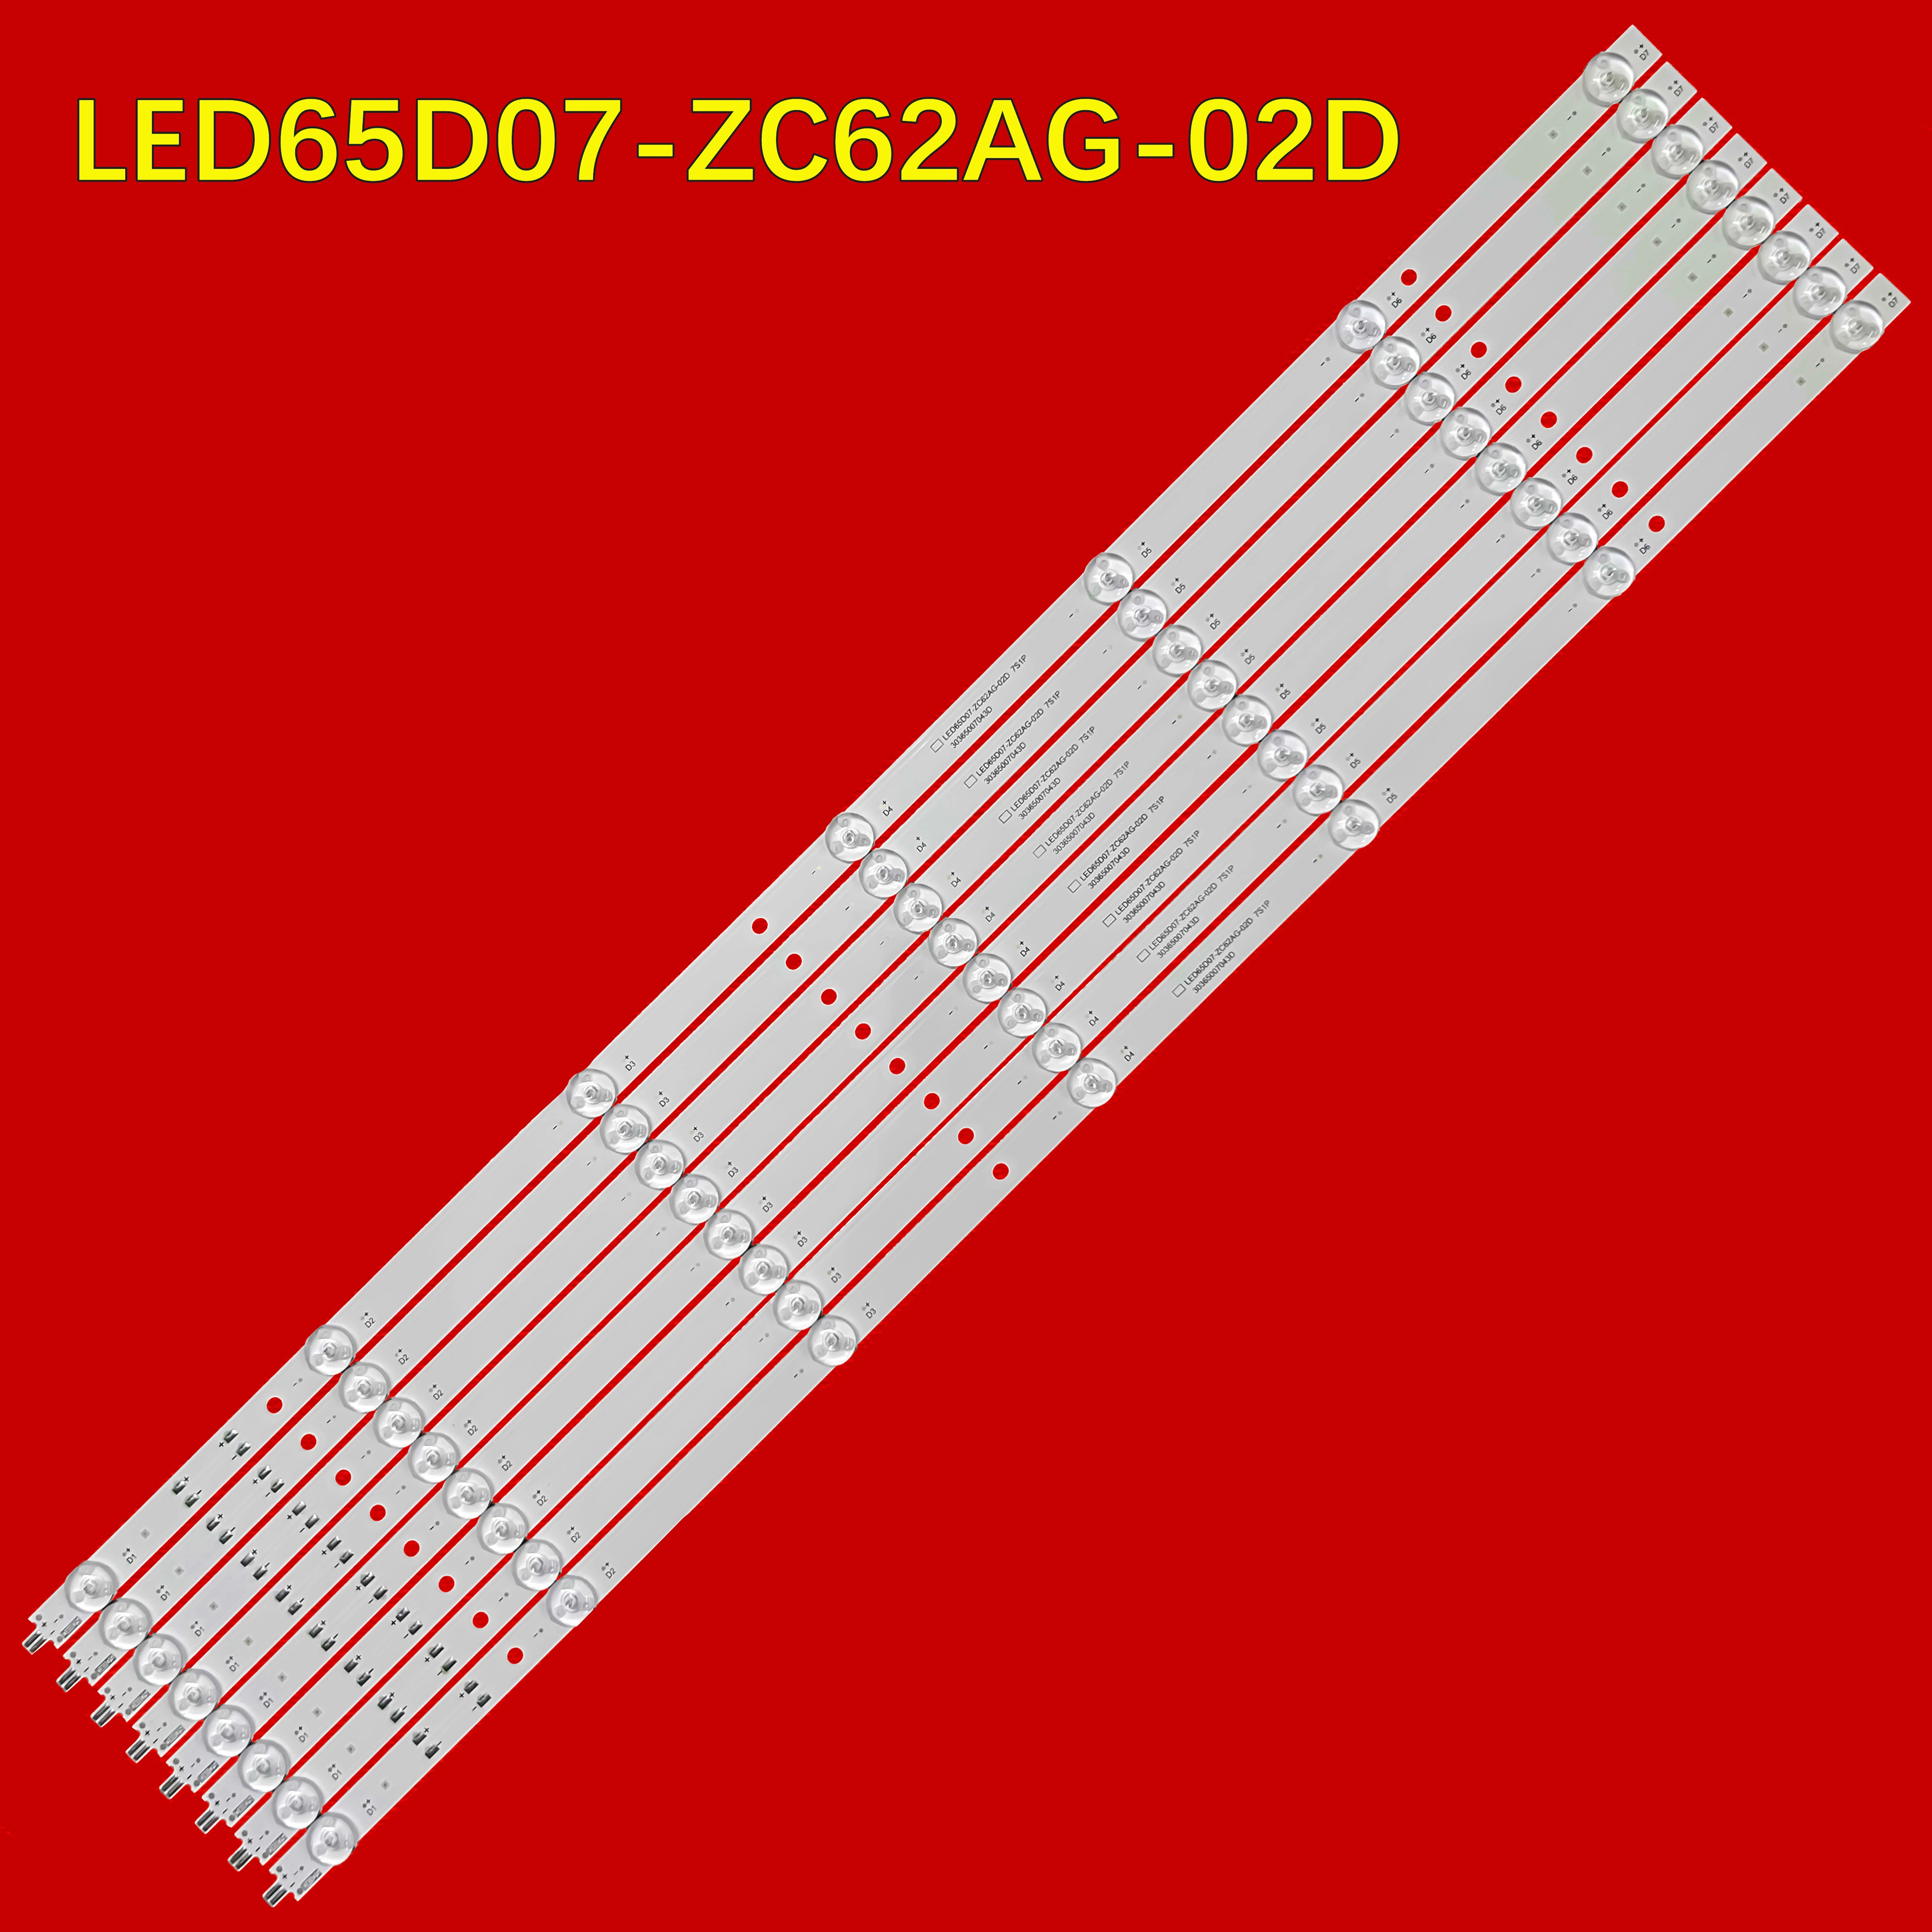 

LED TV Backlight Strip for 65R3 LS65Z51Z LU65D31(PRO) 30365007043D LED65D07-ZC62AG-02D